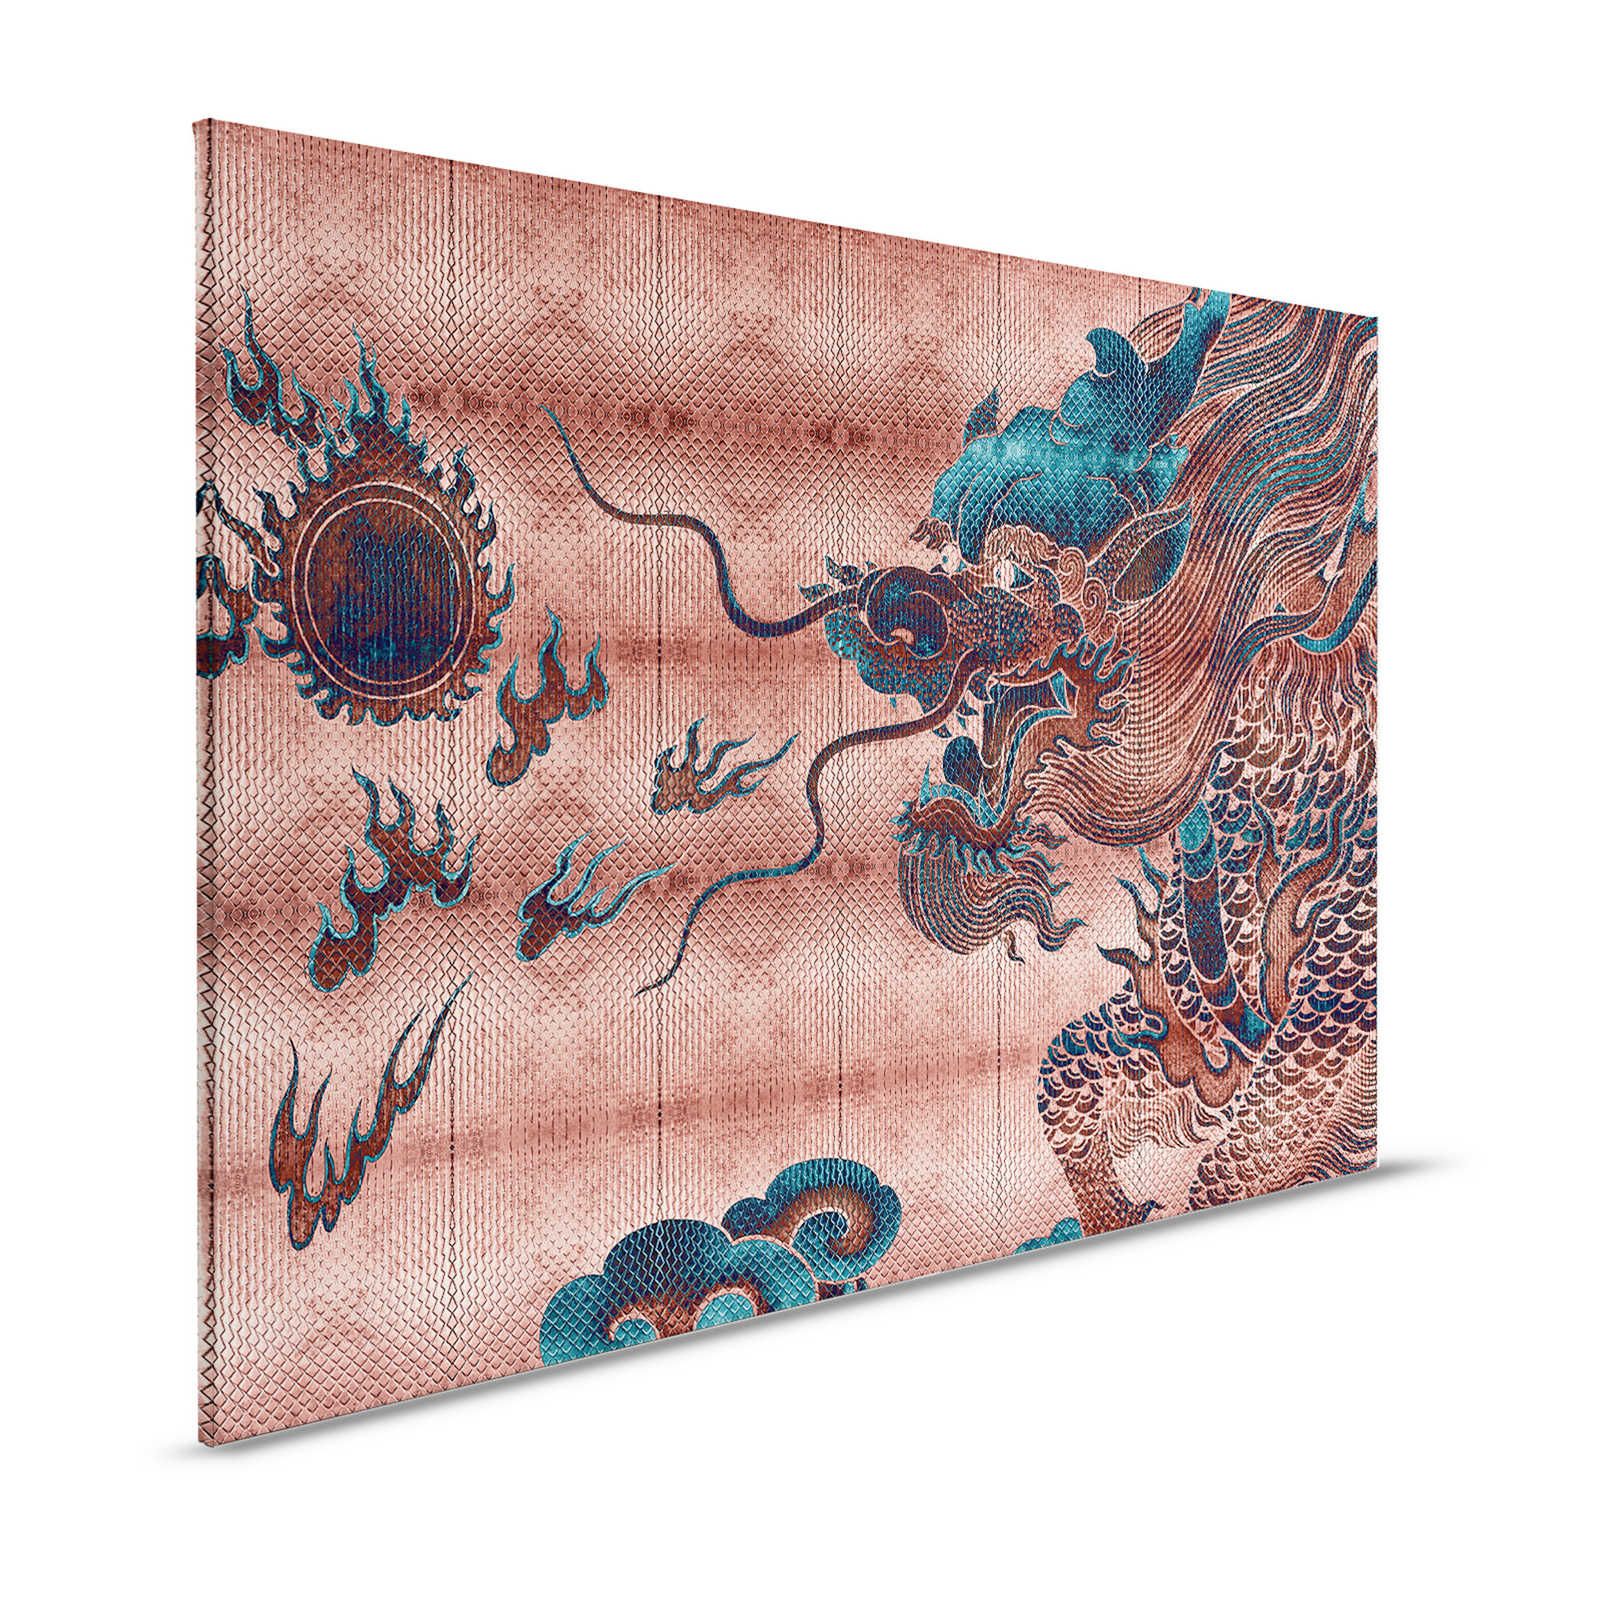 Shenzen 1 - Toile Dragon Asian Syle avec couleurs métalliques - 1,20 m x 0,80 m
